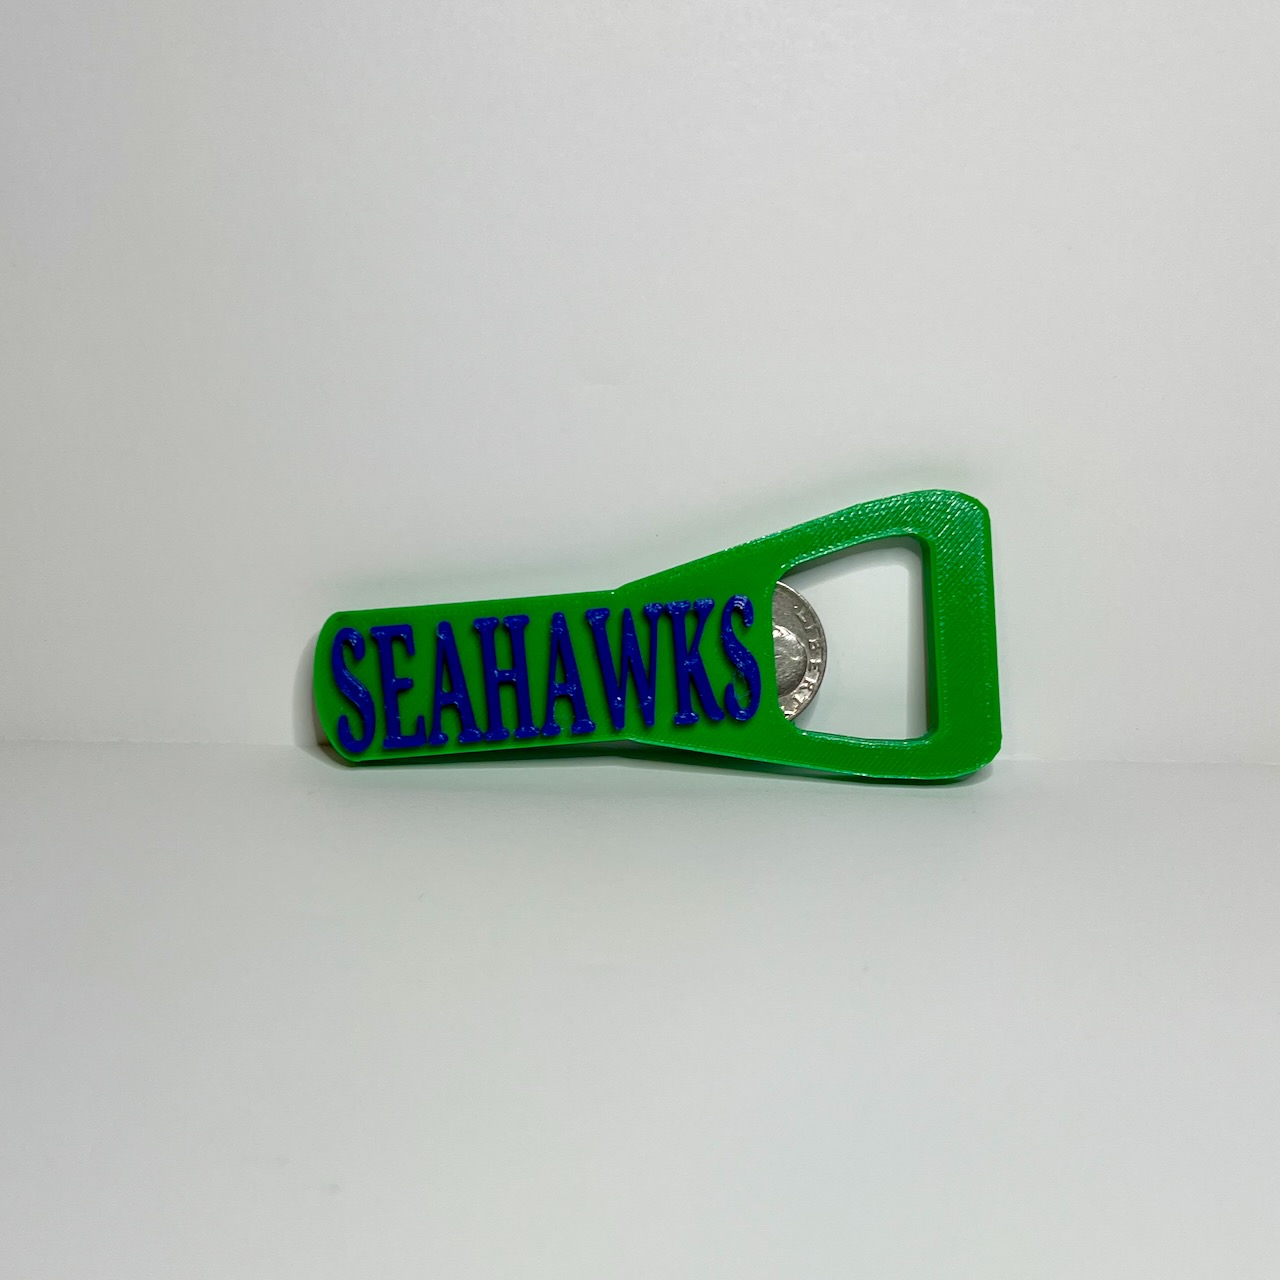 Seattle Seahawks bottle opener